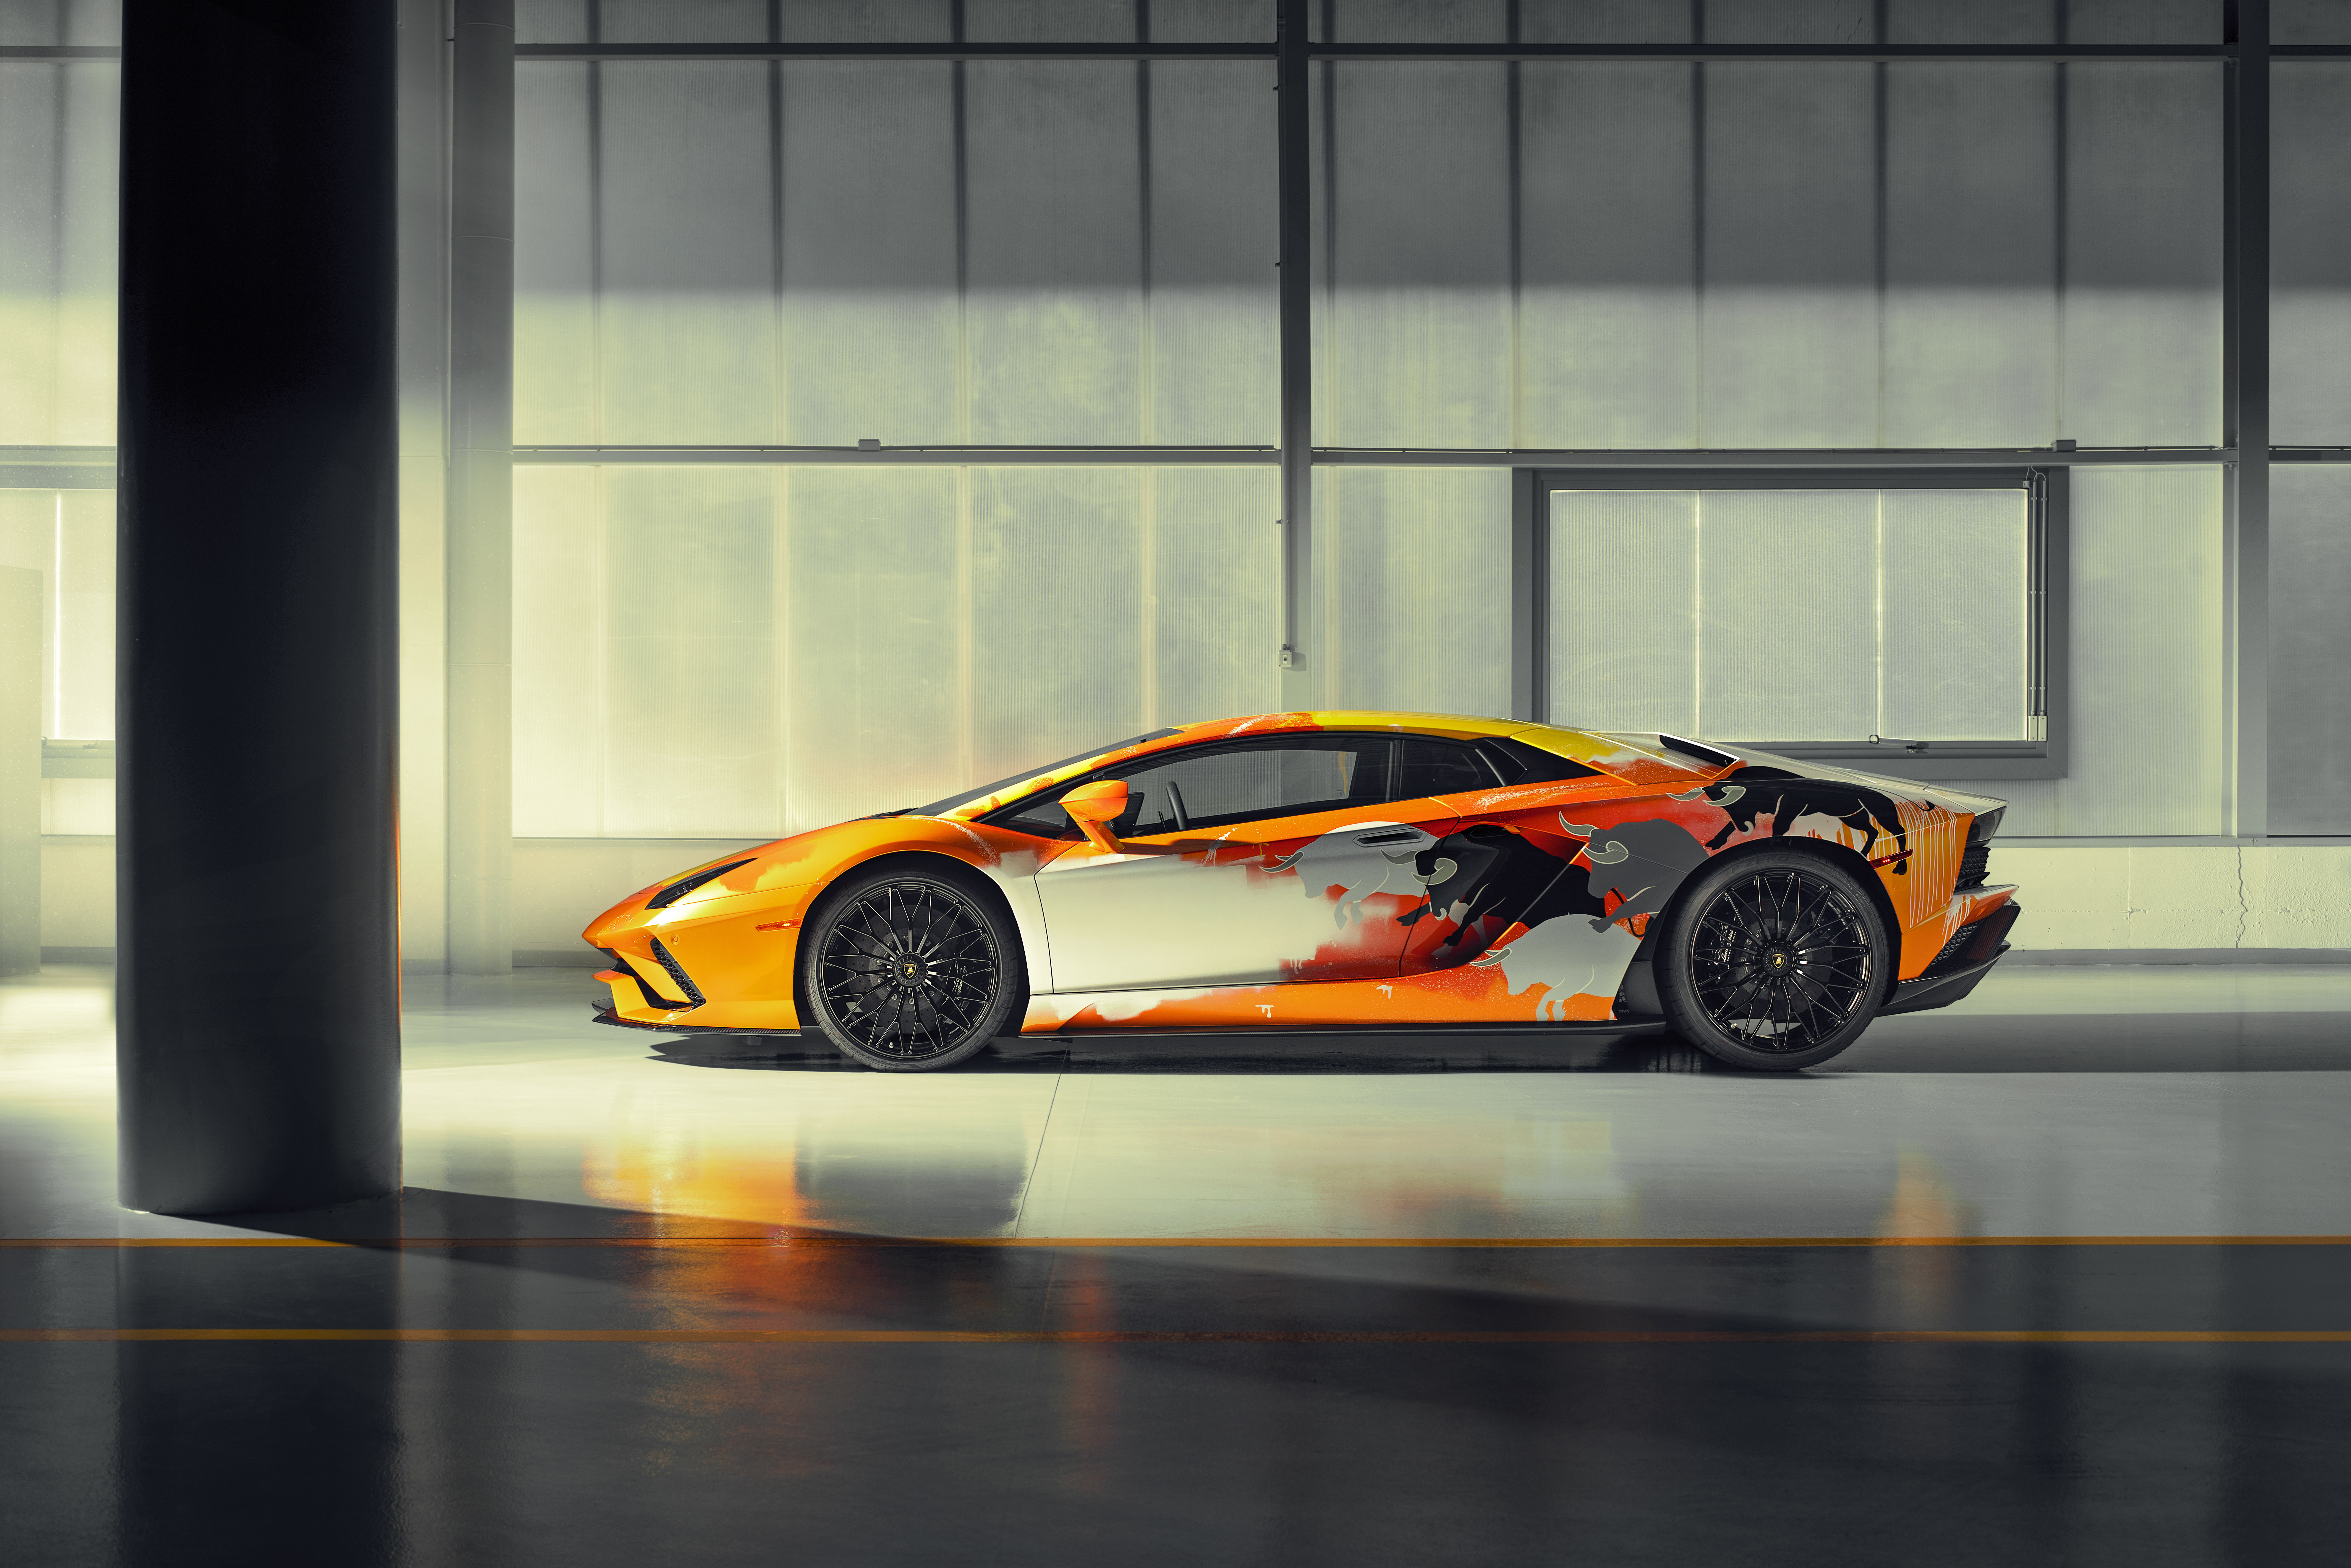 Bức tranh về Lamborghini được vẽ chi tiết và sống động sẽ khiến bạn ngất ngây với sự mạnh mẽ và đẳng cấp của chiếc siêu xe này.